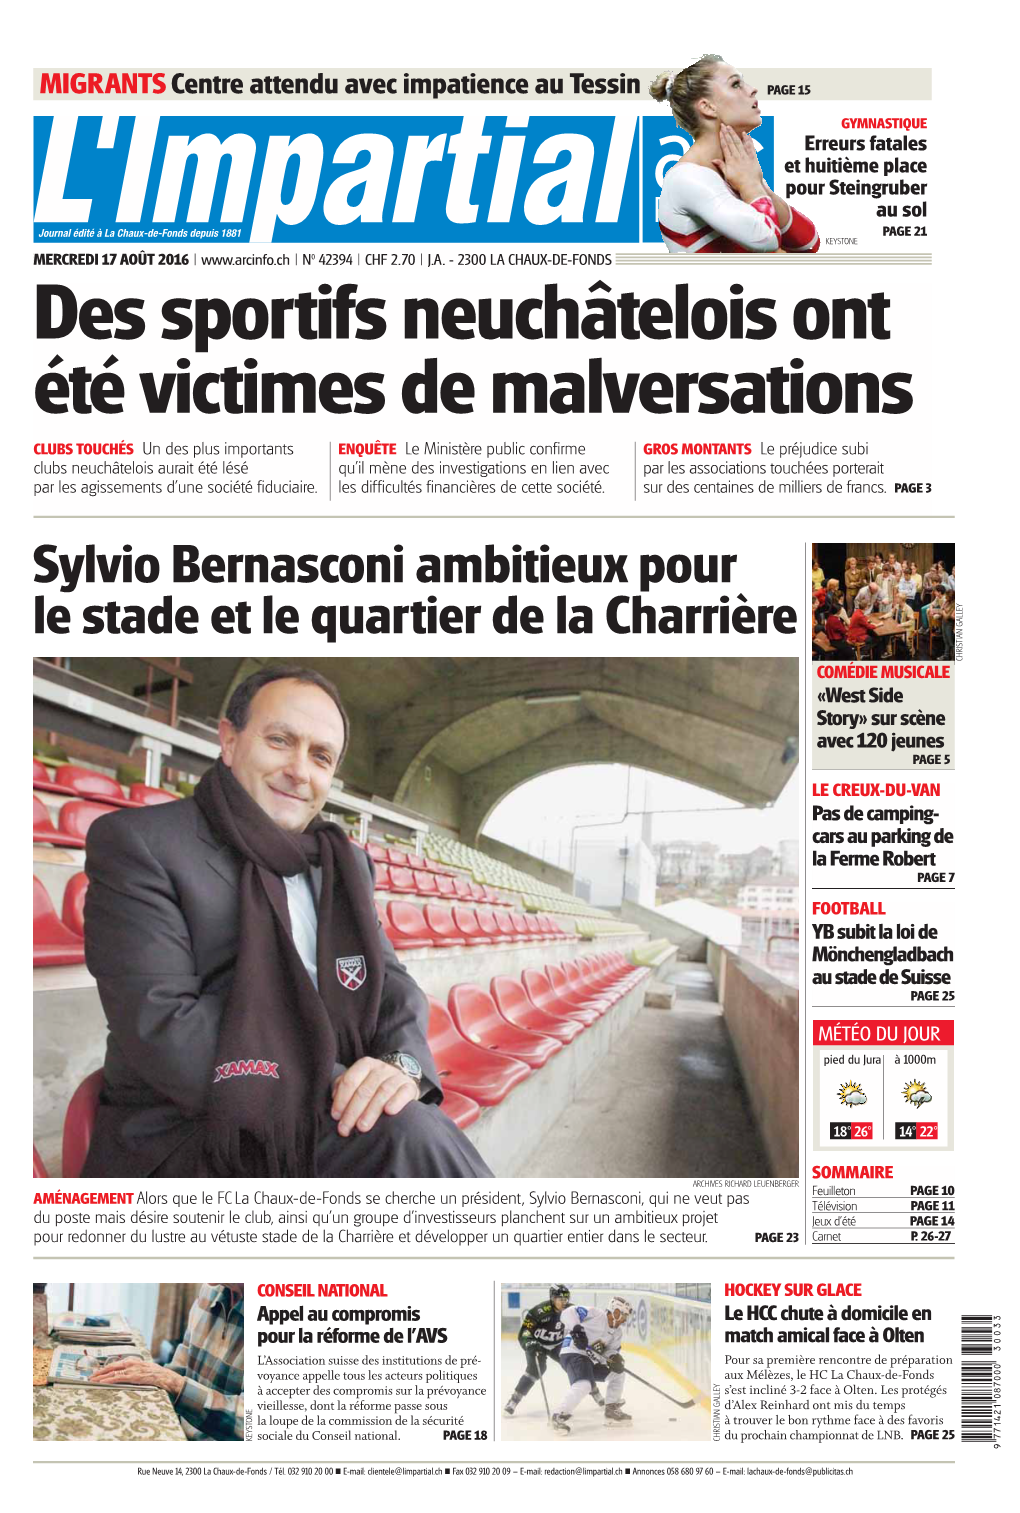 Sylvio Bernasconi Ambitieux Pour Le Stade Et Le Quartier De La Charrière